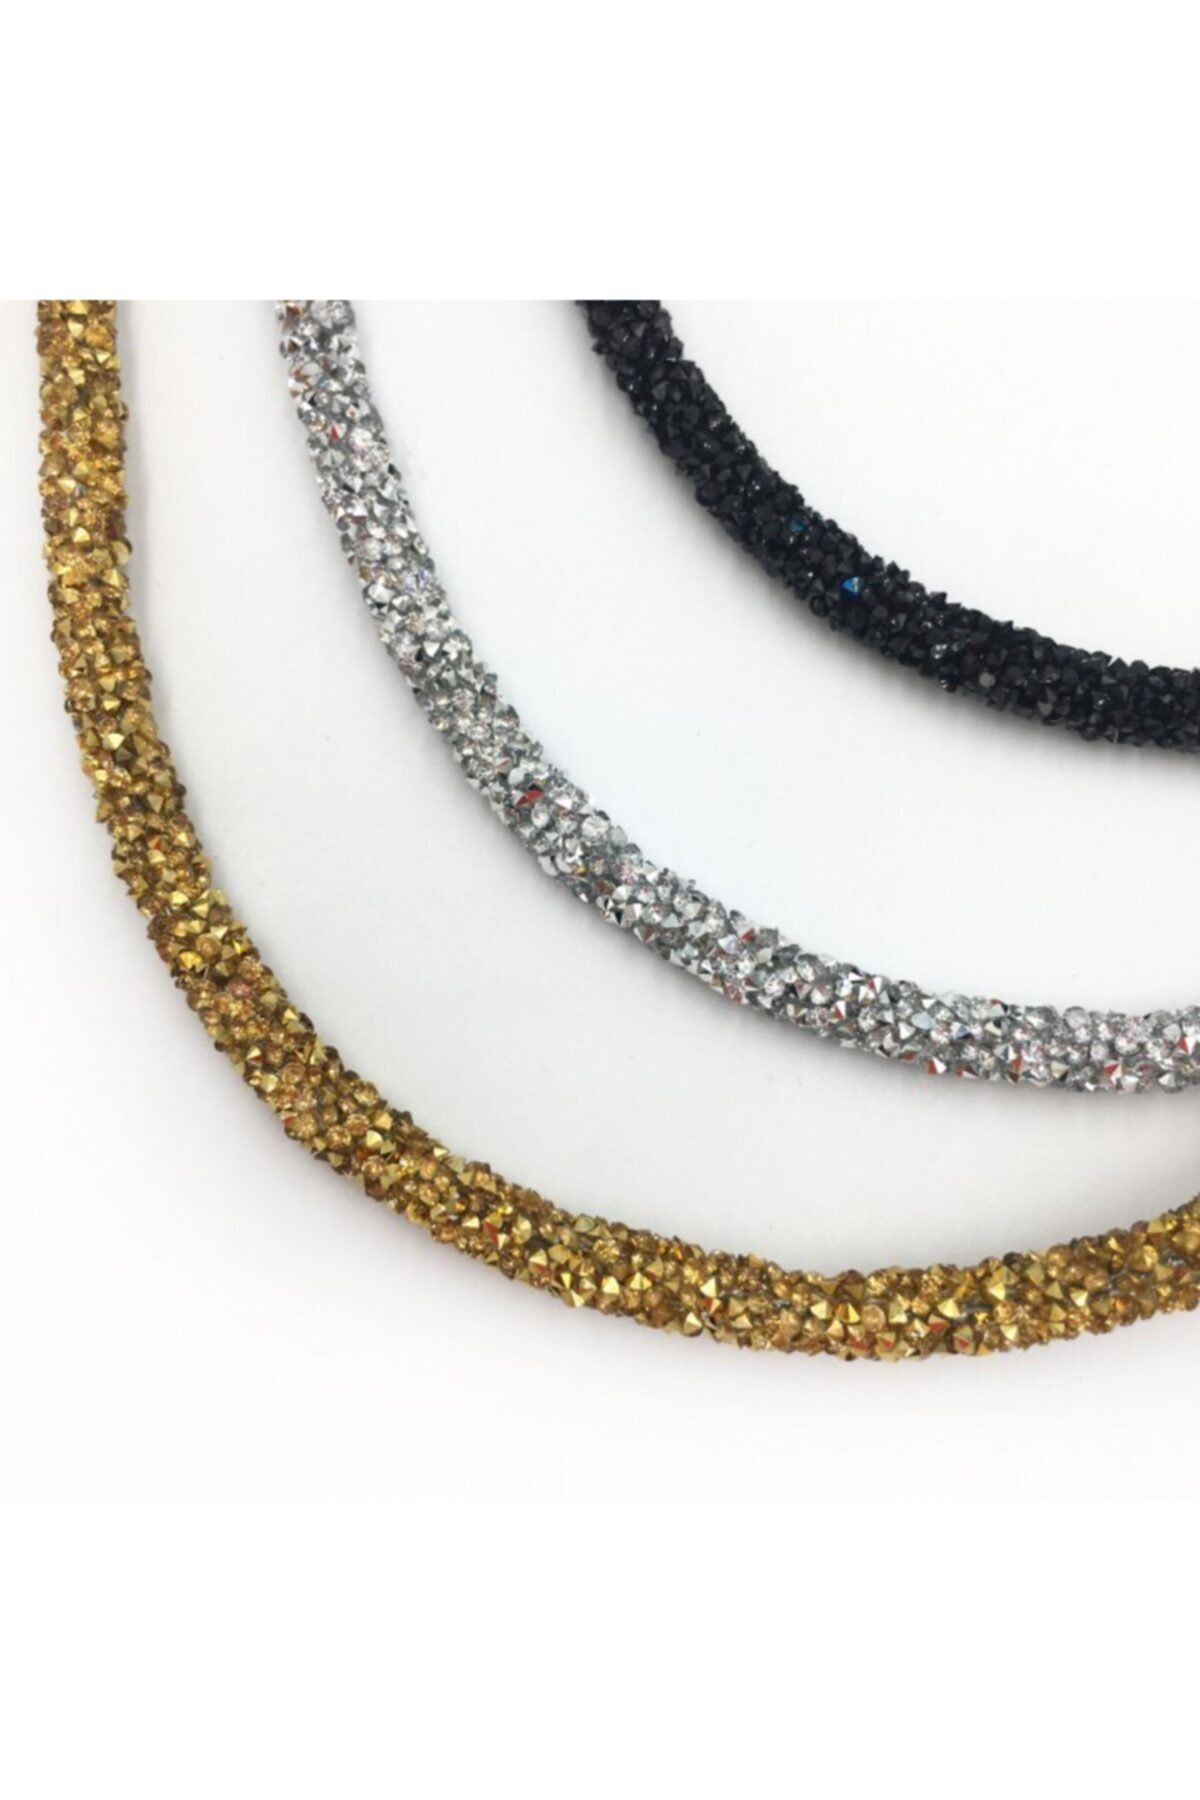 Artikel Gold, Siyah Ve Gümüş Kristal Işıltılı Taç Seti, Saç Bandı